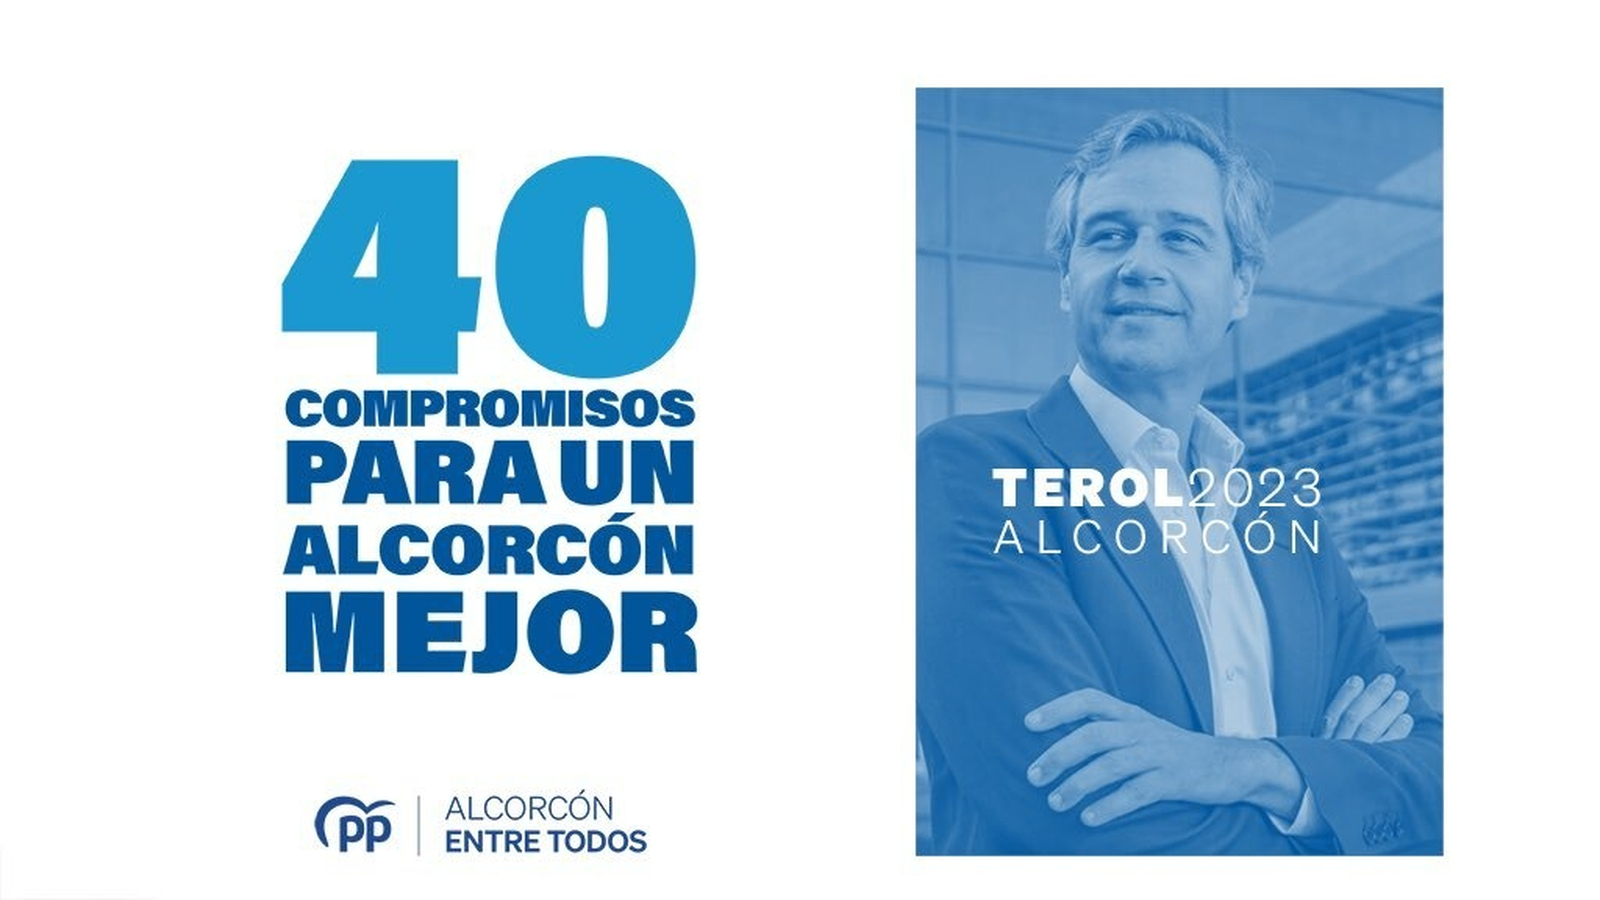 Terol presenta ’40 compromisos para un Alcorcón mejor’ con la mirada puesta en los vecinos y alejado de “la crispación y la polémica”